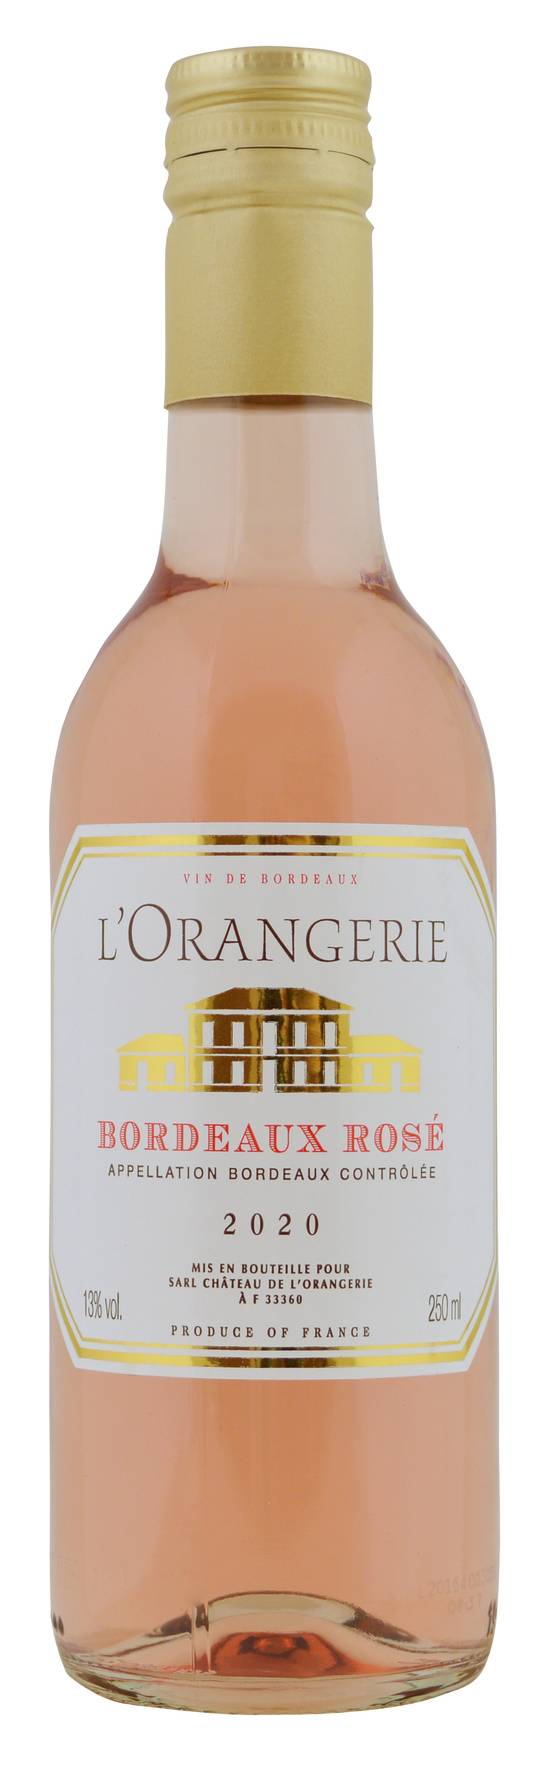 L'orangerie - Vin rosé de Bordeaux 2020 (250 ml)